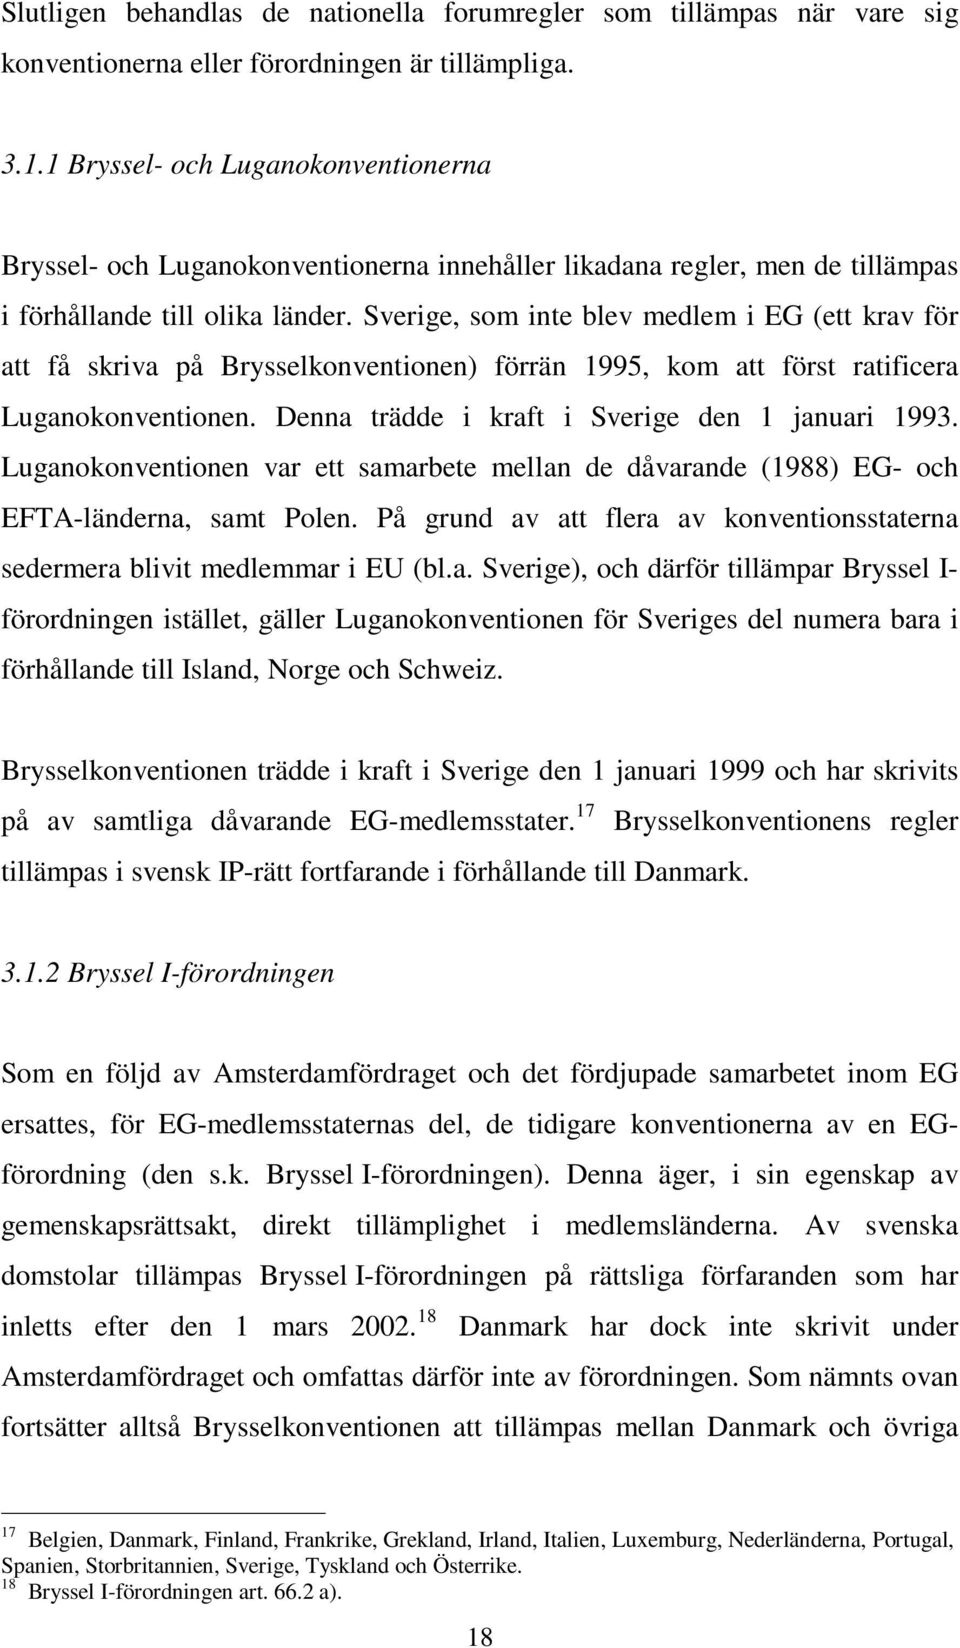 Sverige, som inte blev medlem i EG (ett krav för att få skriva på Brysselkonventionen) förrän 1995, kom att först ratificera Luganokonventionen. Denna trädde i kraft i Sverige den 1 januari 1993.